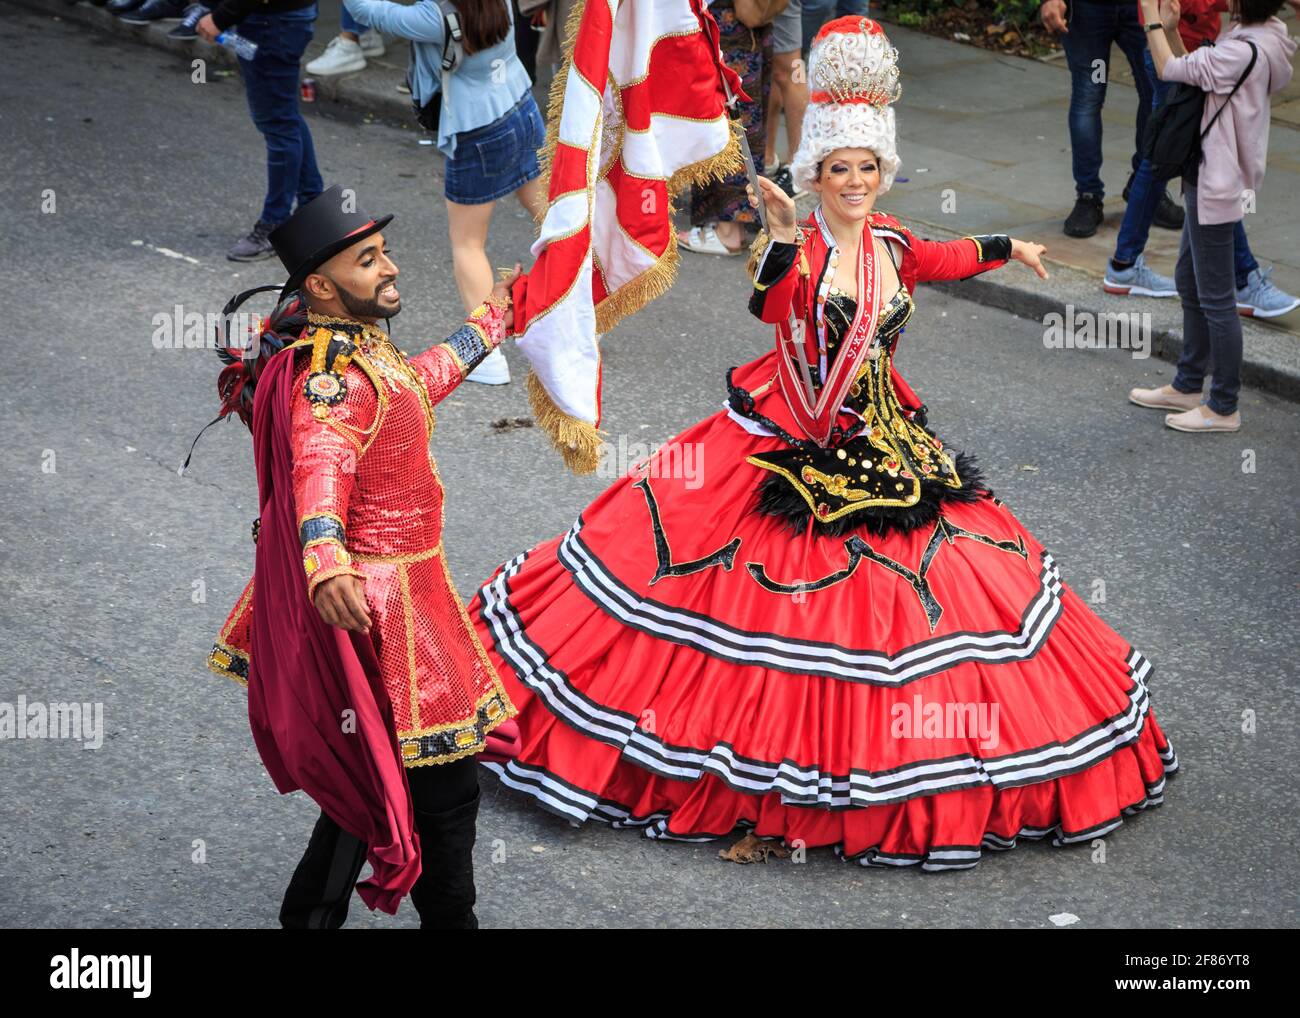 Paraiso School of Samba Dancing interprètes au Notting Hill Carnival Parade, Londres, Royaume-Uni Banque D'Images